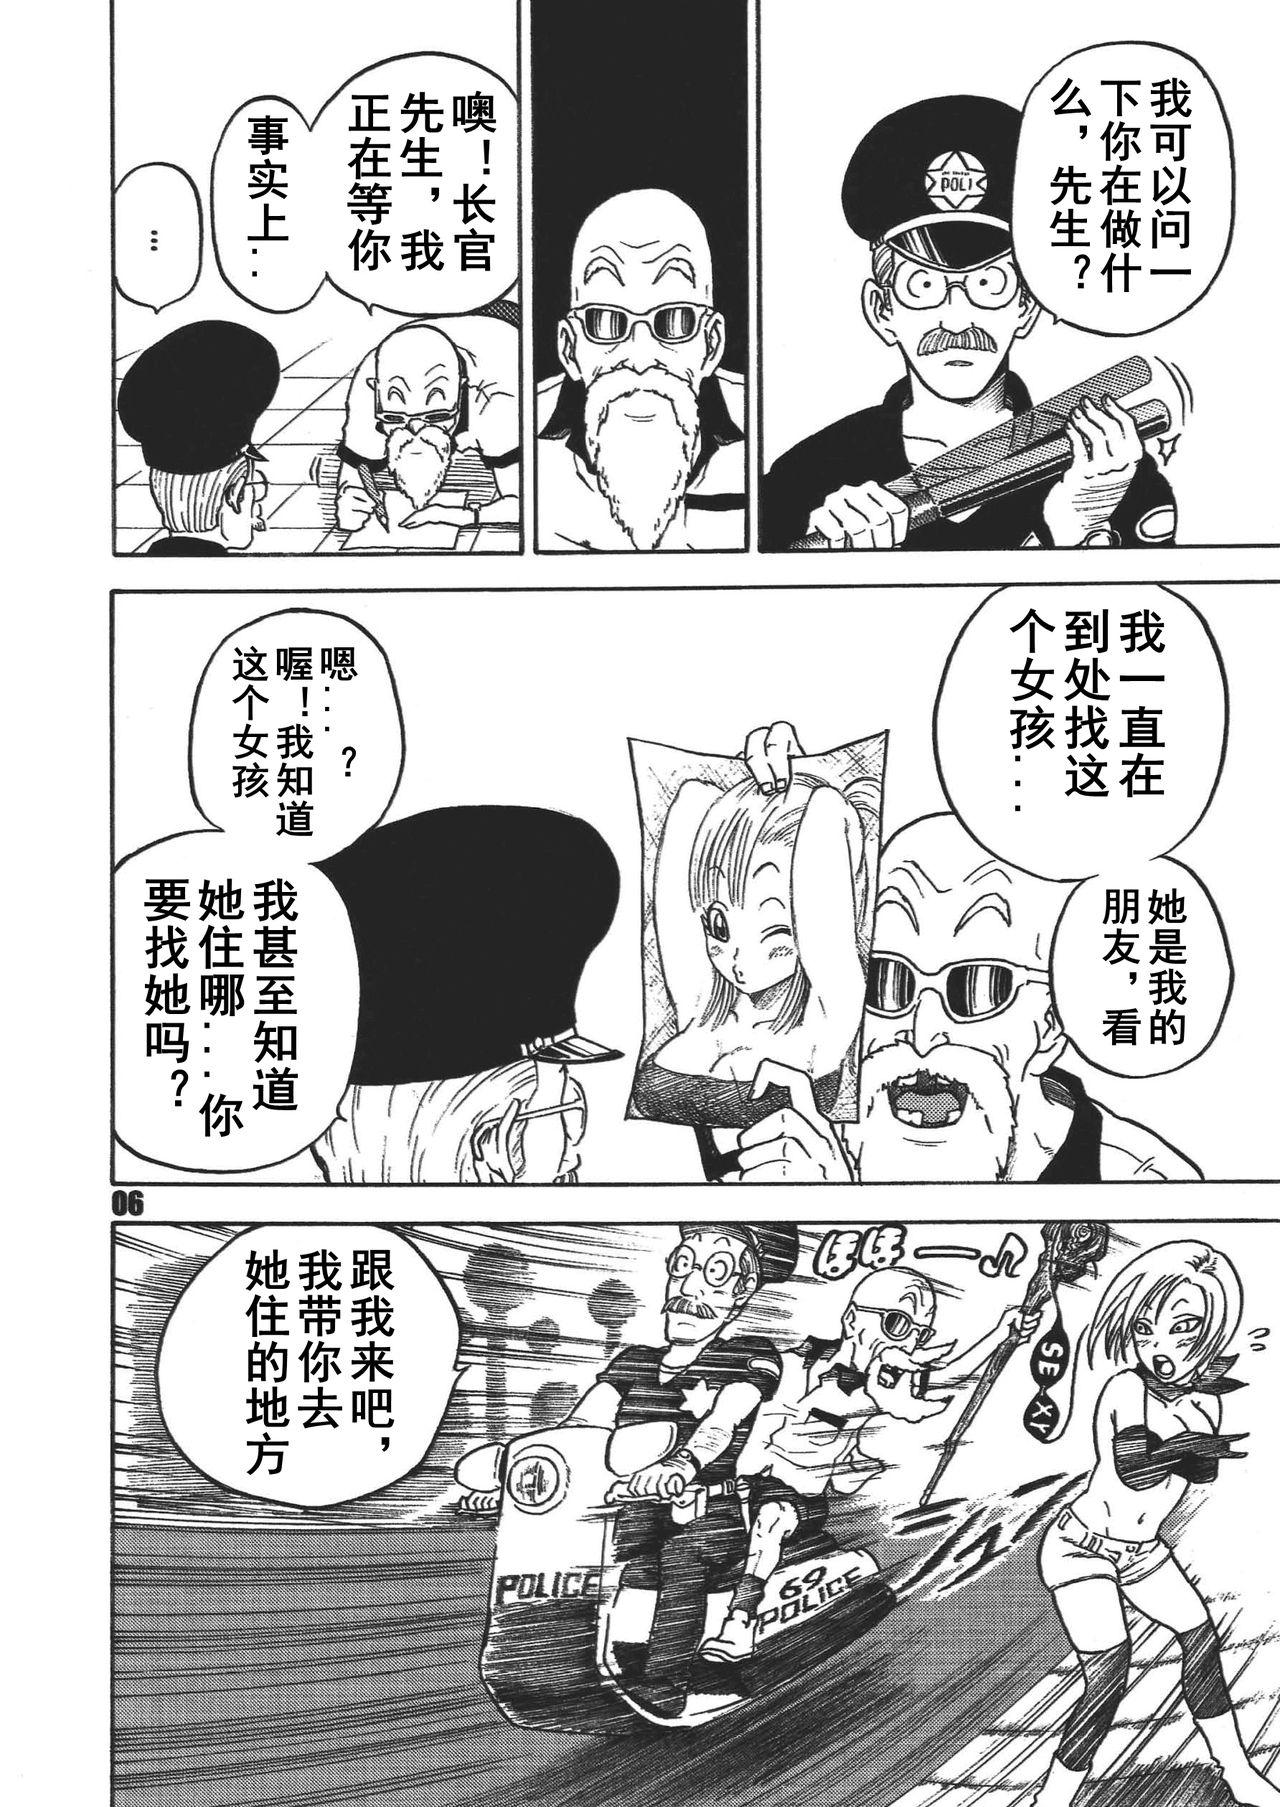 Doggystyle Dangan Ball Maki no Ichi - Nishi no Miyako no Harenchi Jiken - Dragon ball Italian - Page 5